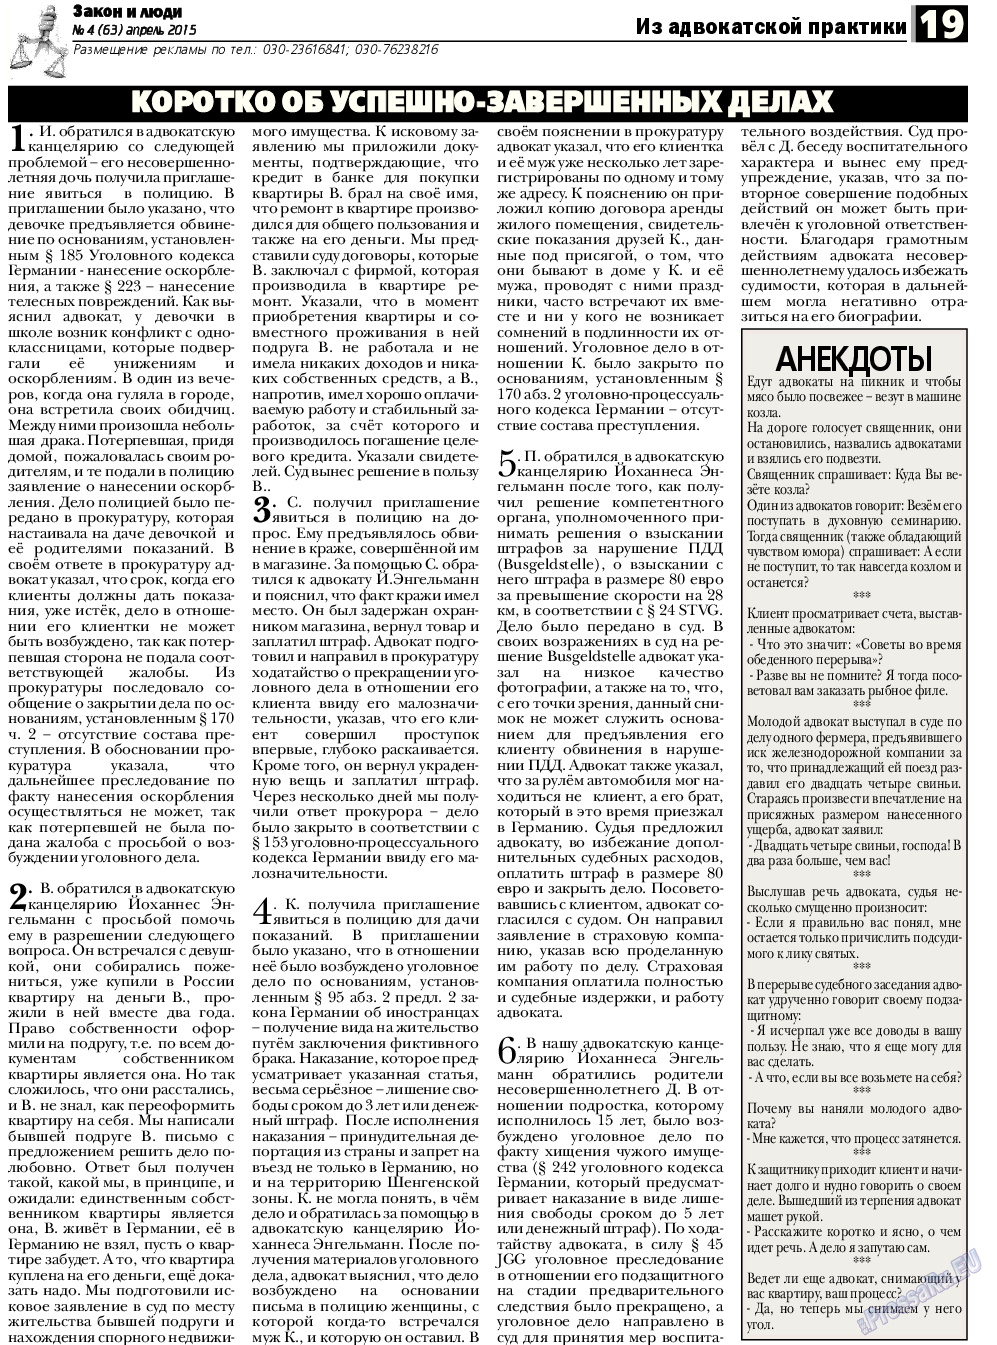 Закон и люди, газета. 2015 №4 стр.19